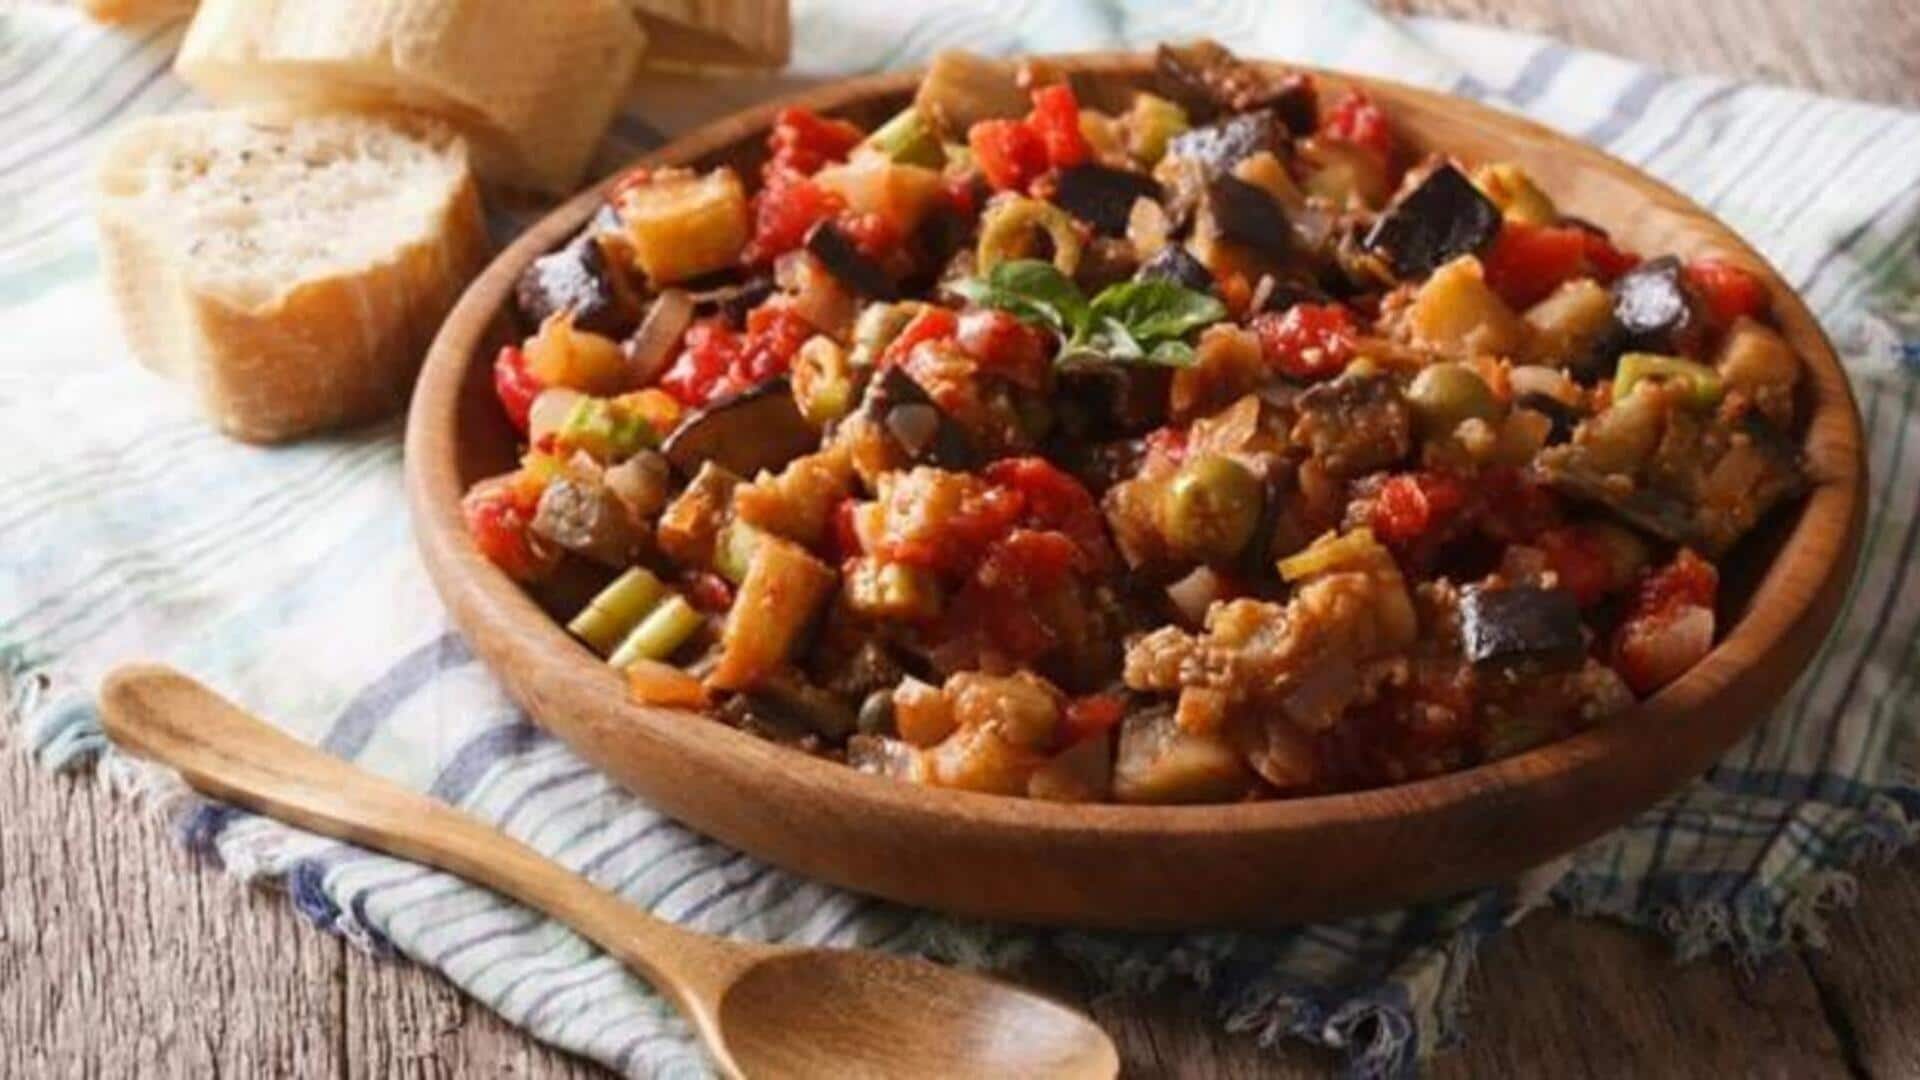 Masak caponata siciliana vegan yang lezat dengan resep ini